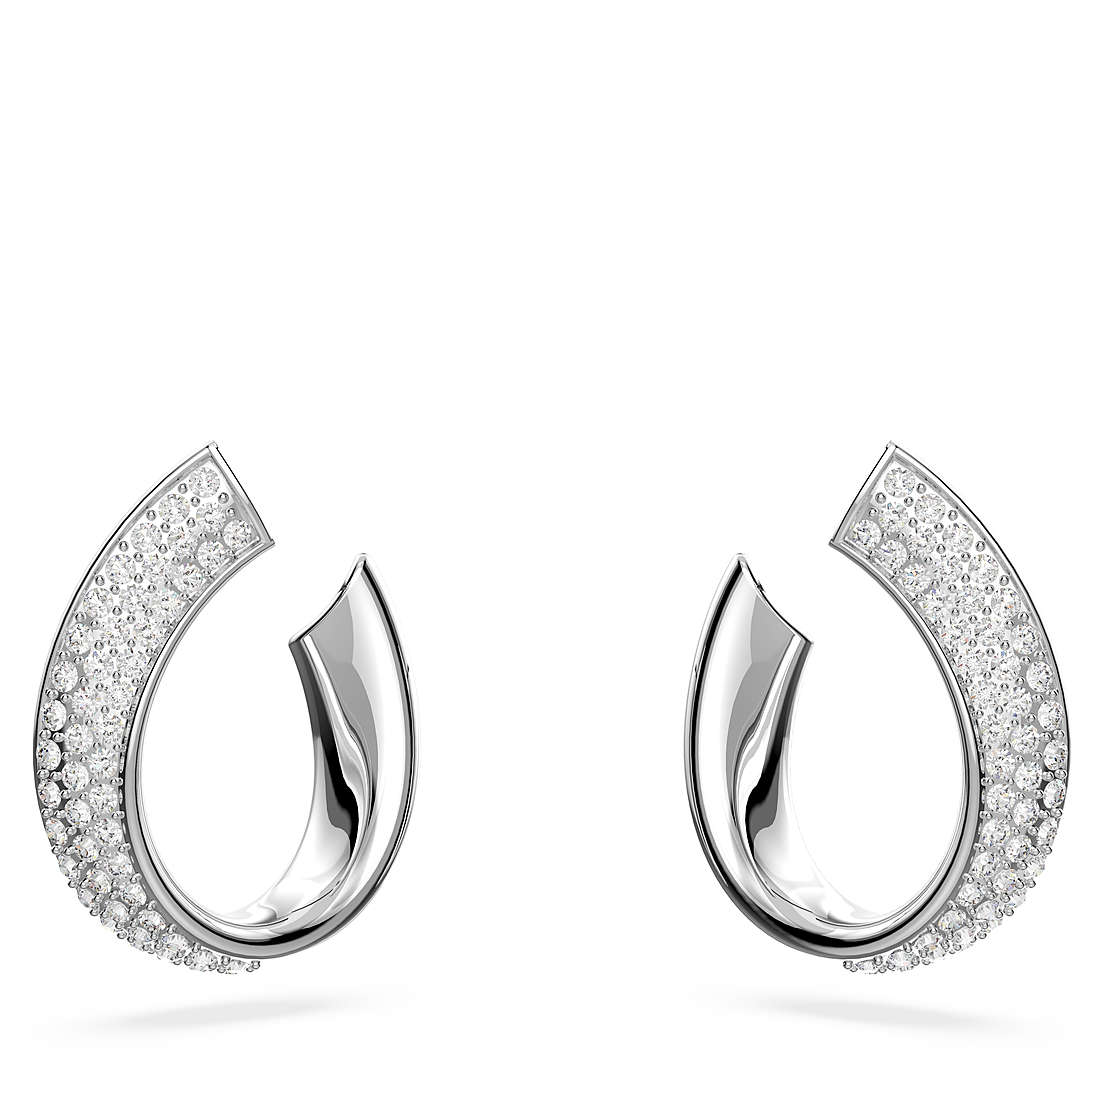 ear-rings woman jewellery Swarovski Exist 5637563